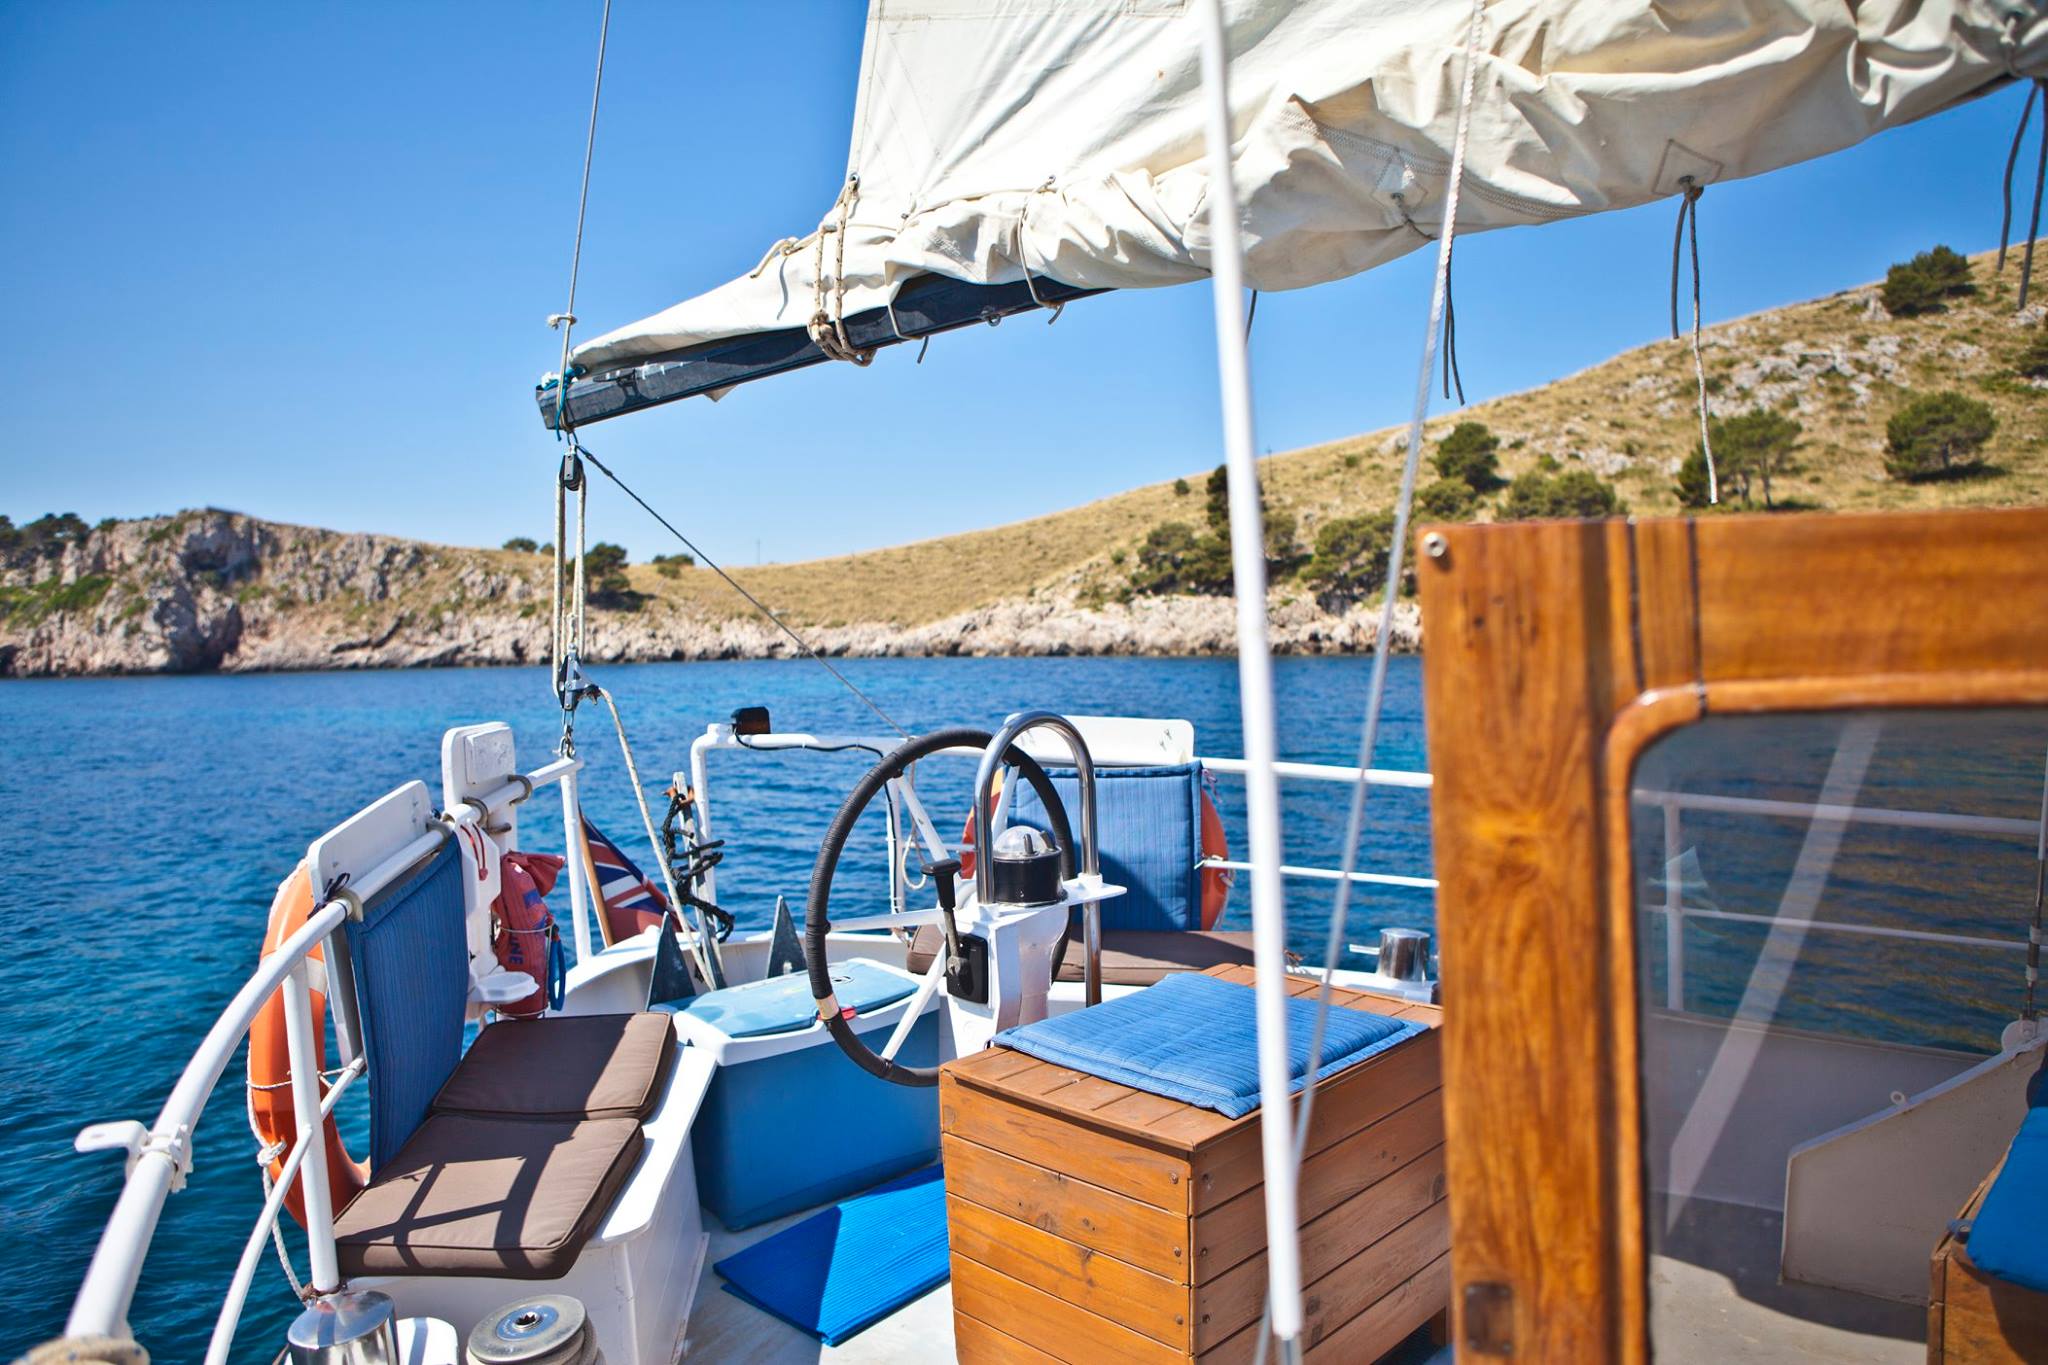 Boat trips Mallorca